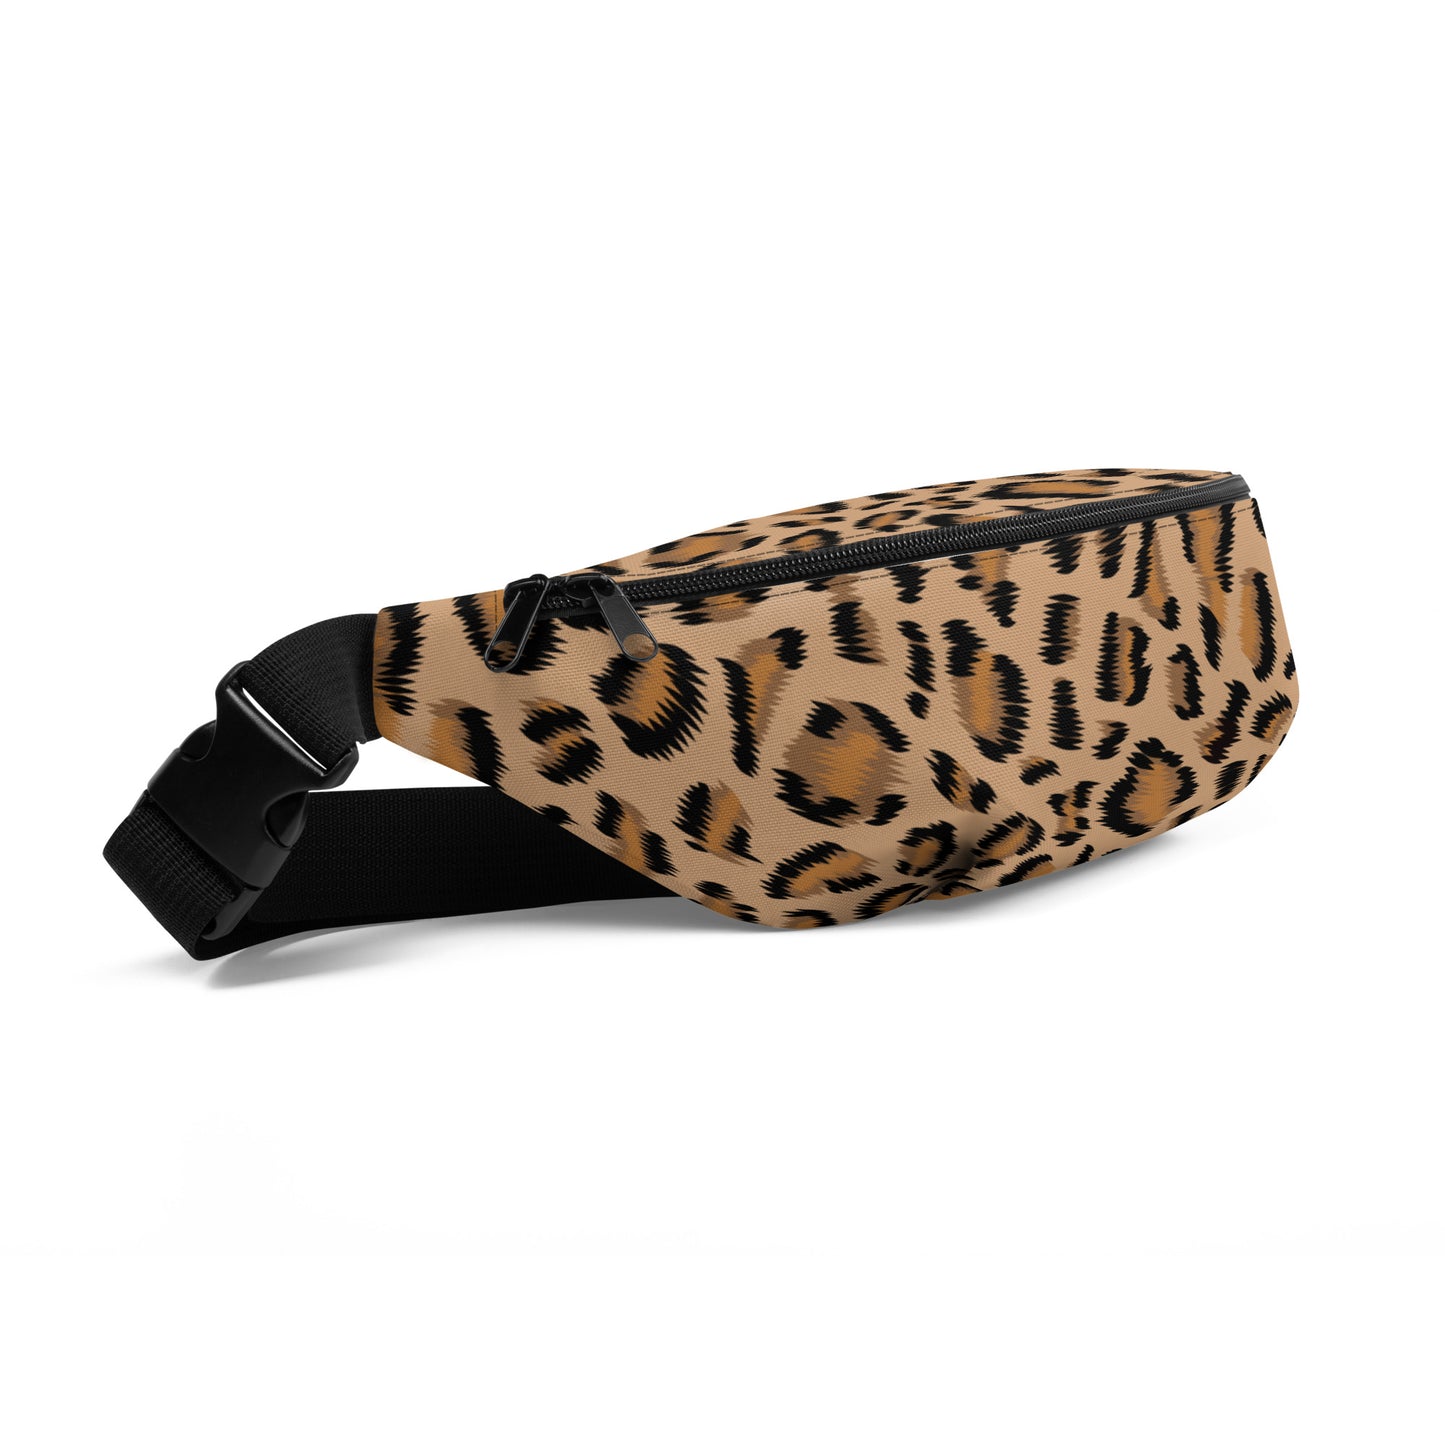 Melrose Cat - Leopard Print Belt Bag